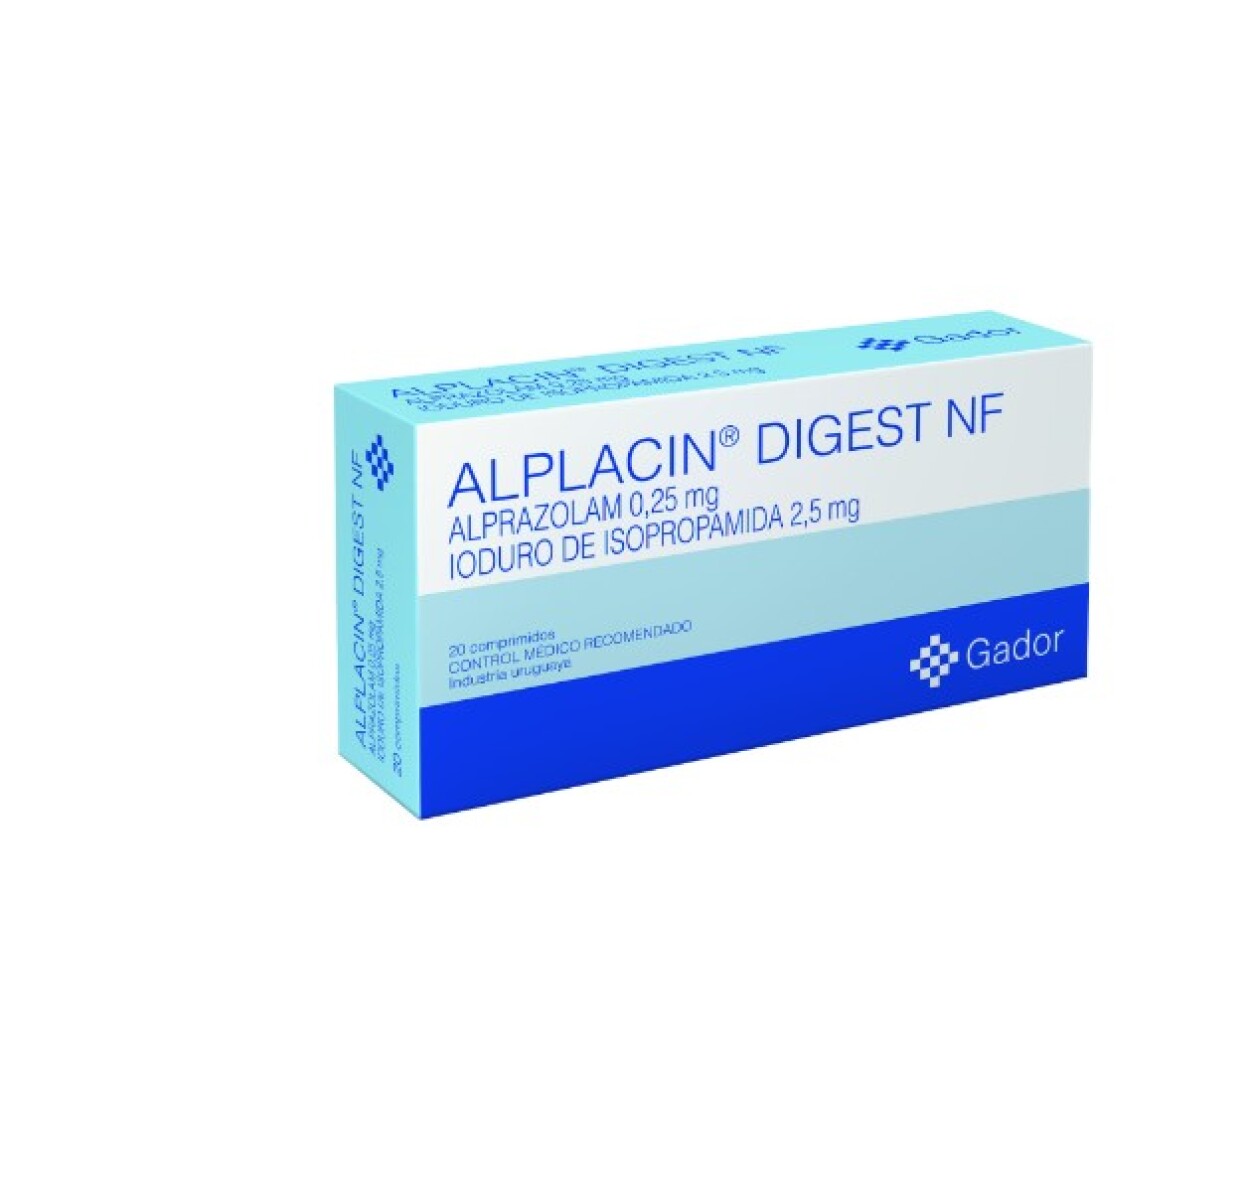 Alplacin Digest Nf x 20 COM 